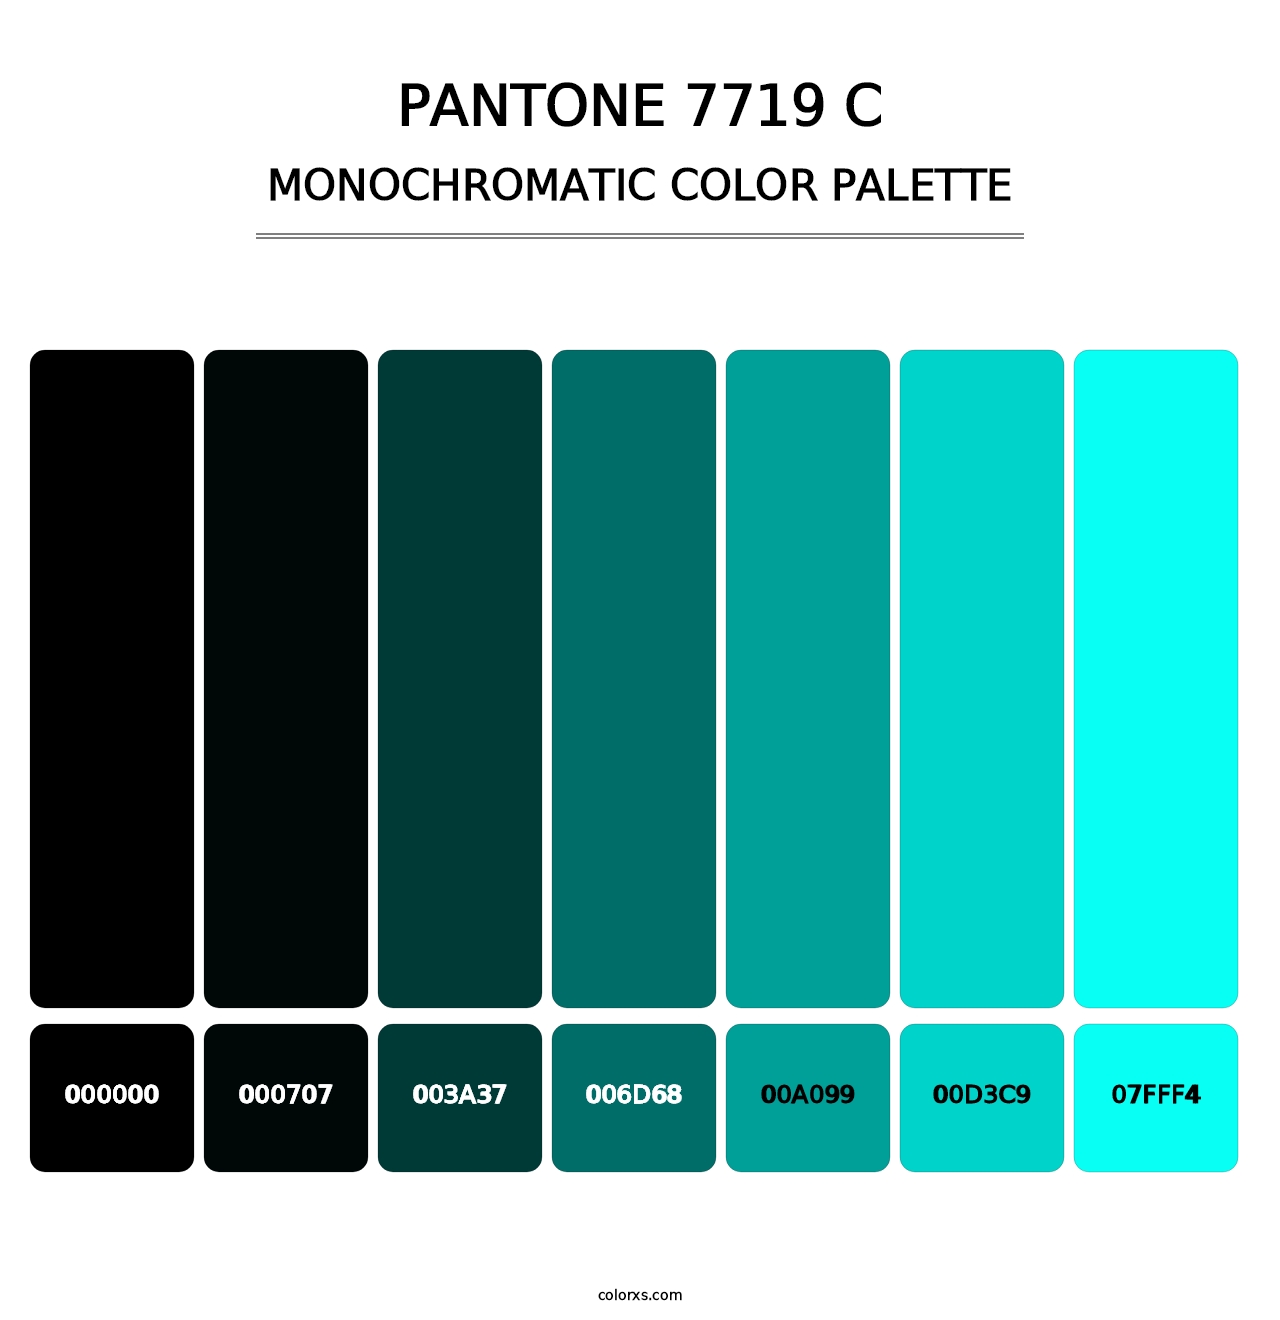 PANTONE 7719 C - Monochromatic Color Palette